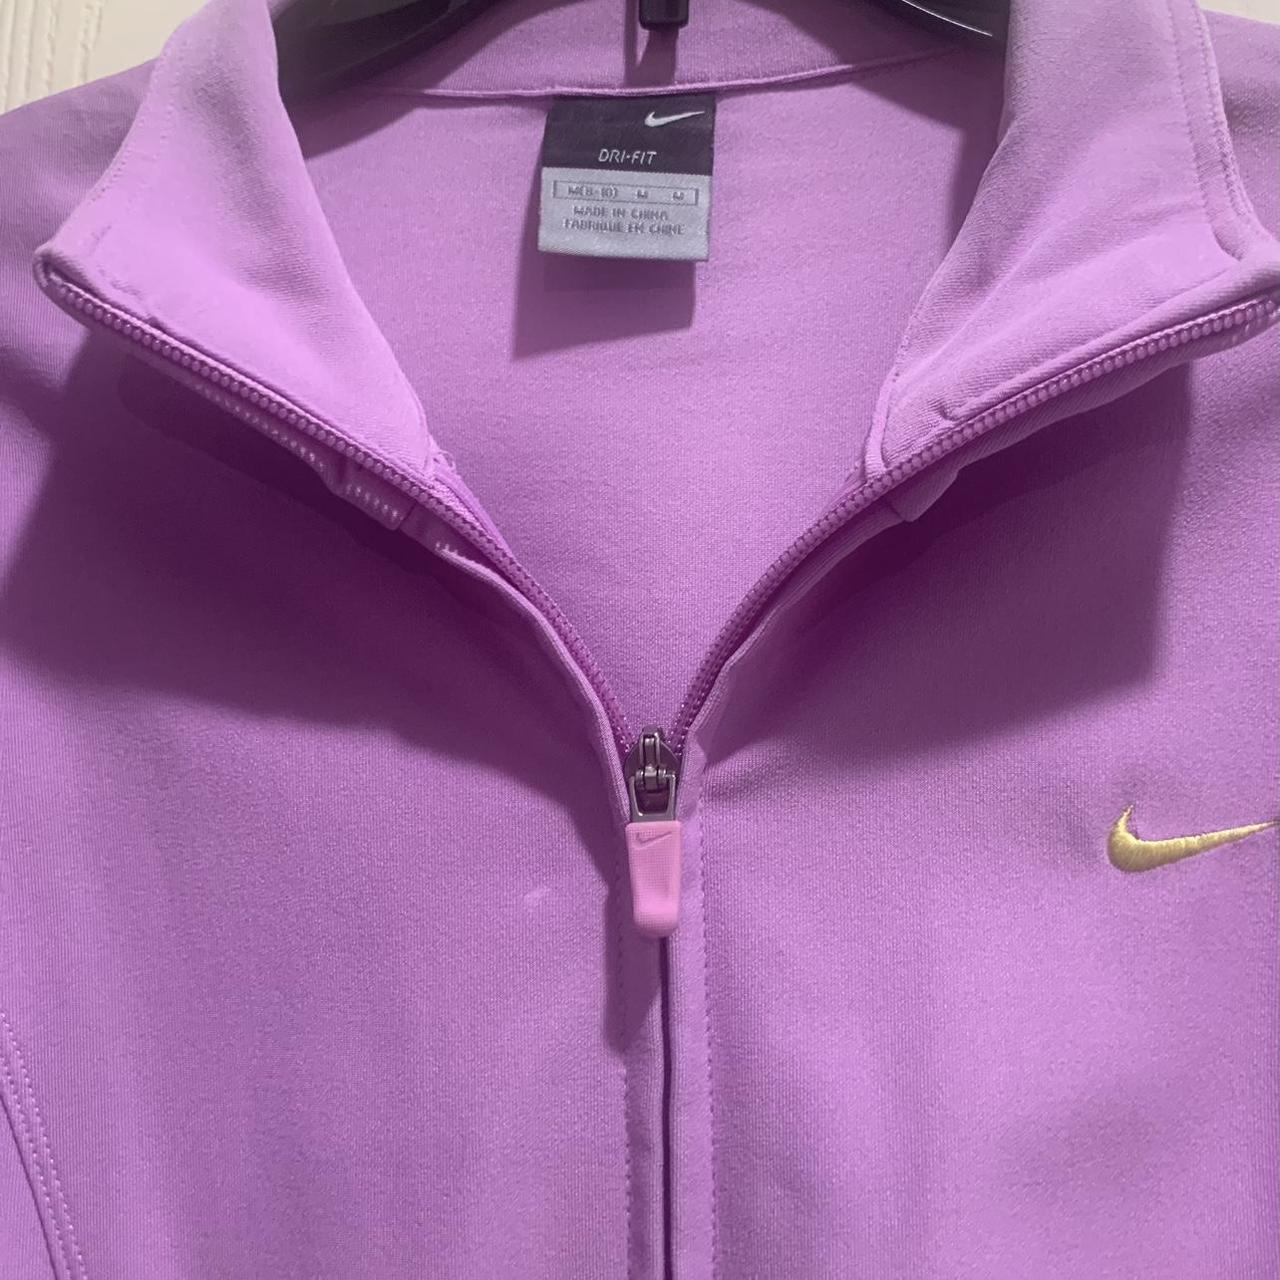 *Nike sweater Color: purple Size: Medium like... - Depop